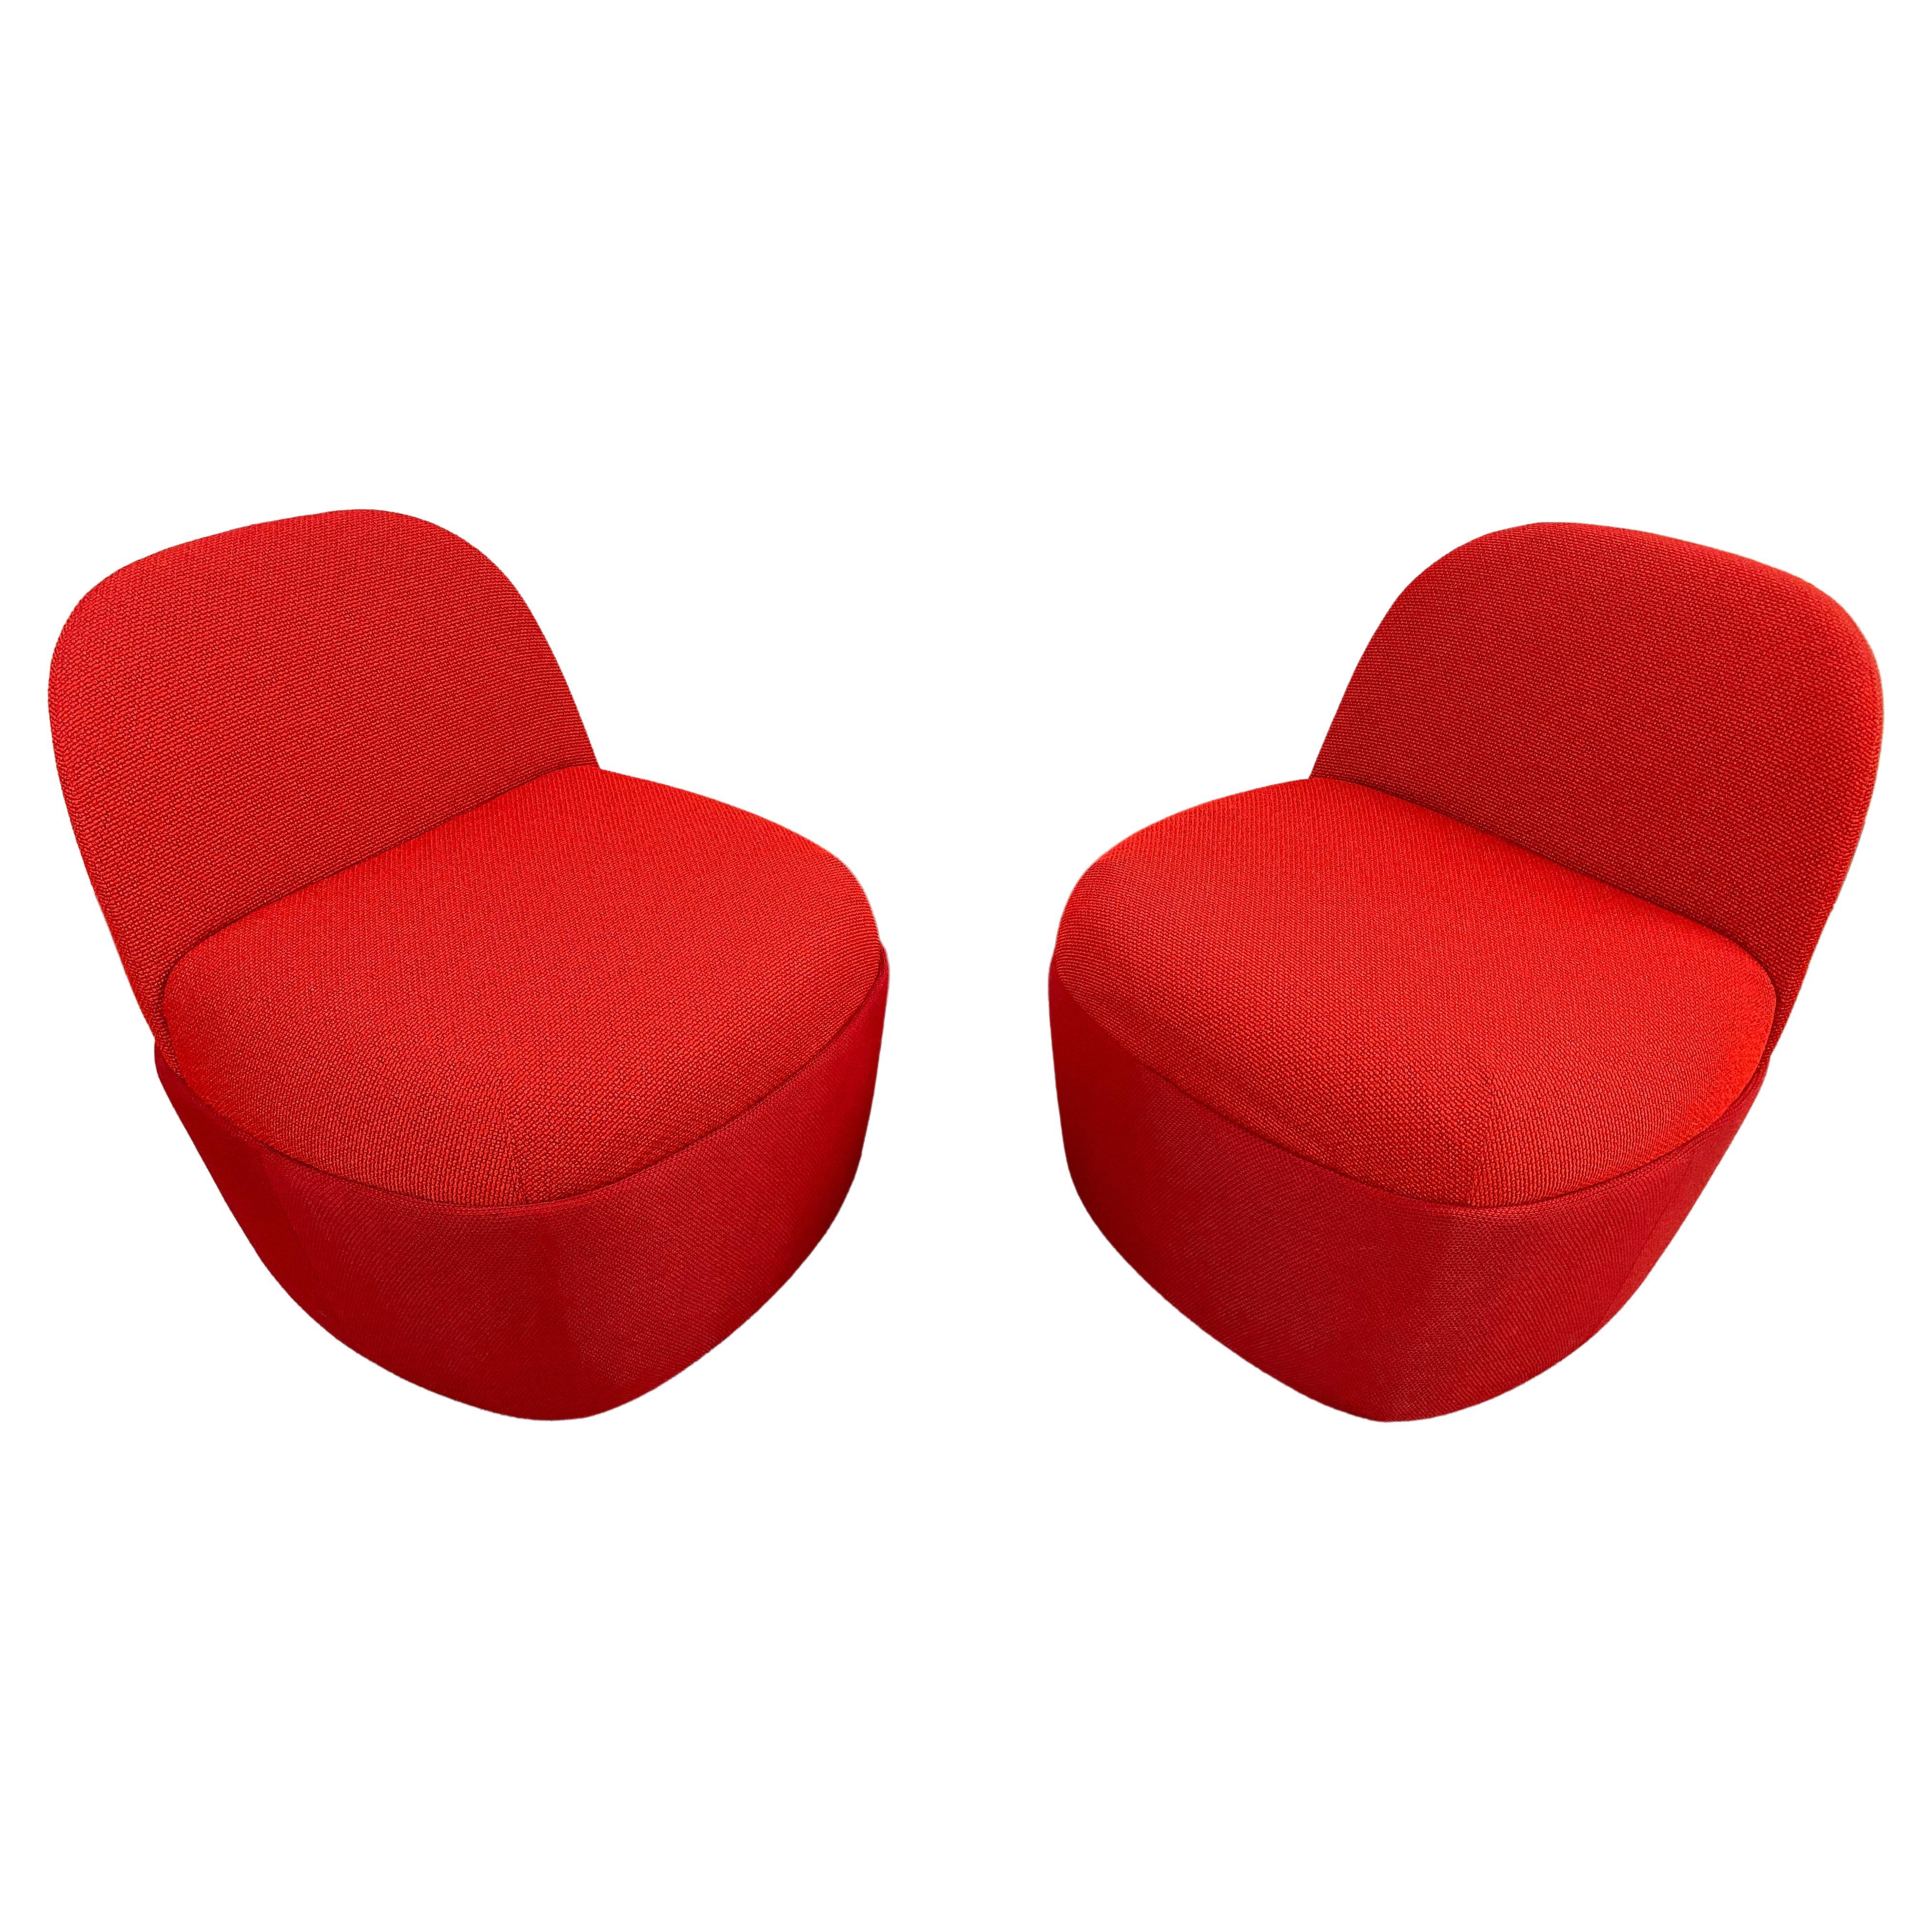 Ein skurriles modernes Paar von Studio TK Chest Collection benutzerdefinierte Slipper Stühle oder Poufs mit Rückenlehne in einer schönen roten Farbe. Die beiden Stühle sind aus hochwertigem Strickstoff gefertigt und sehr bequem und gut verarbeitet.